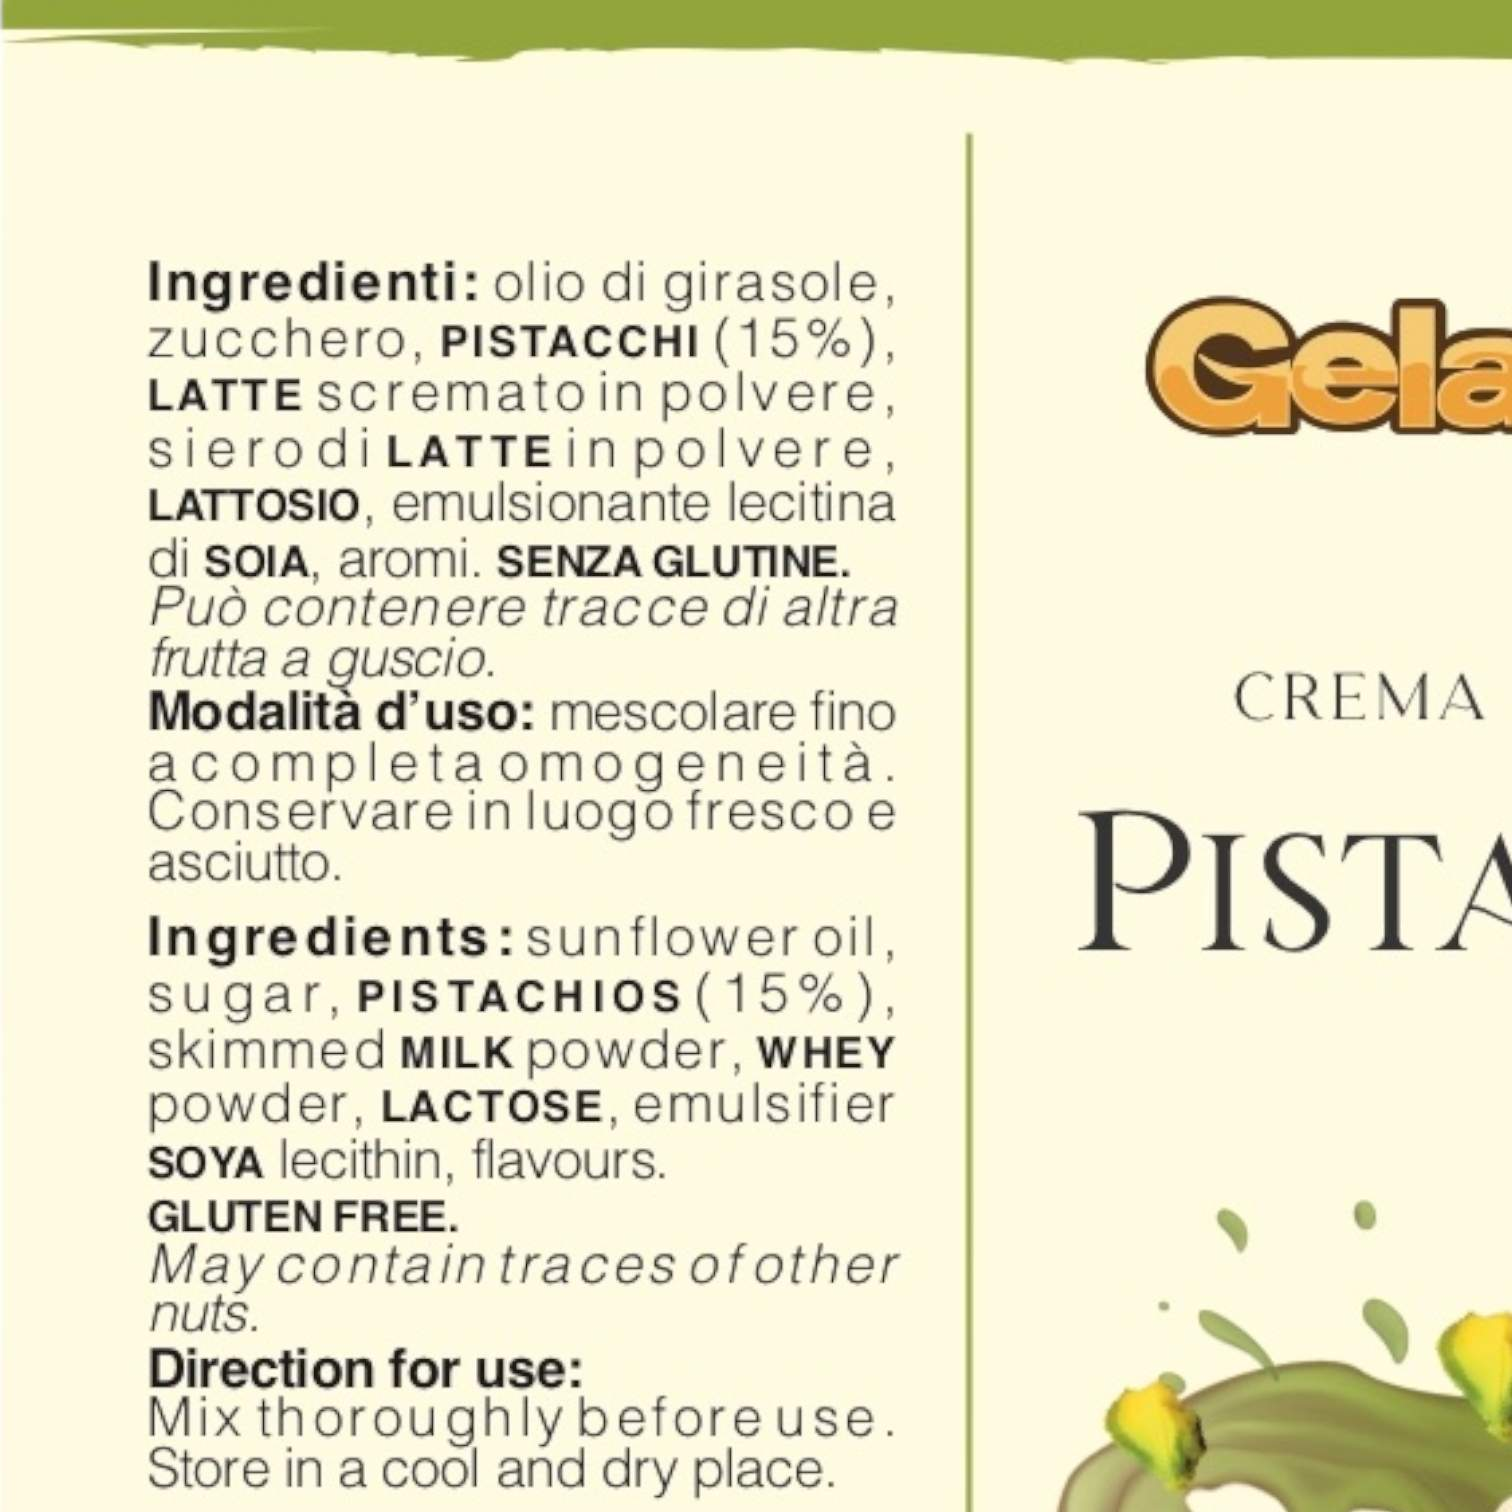 PISTACCHIO-Gelatosità-pistacchio